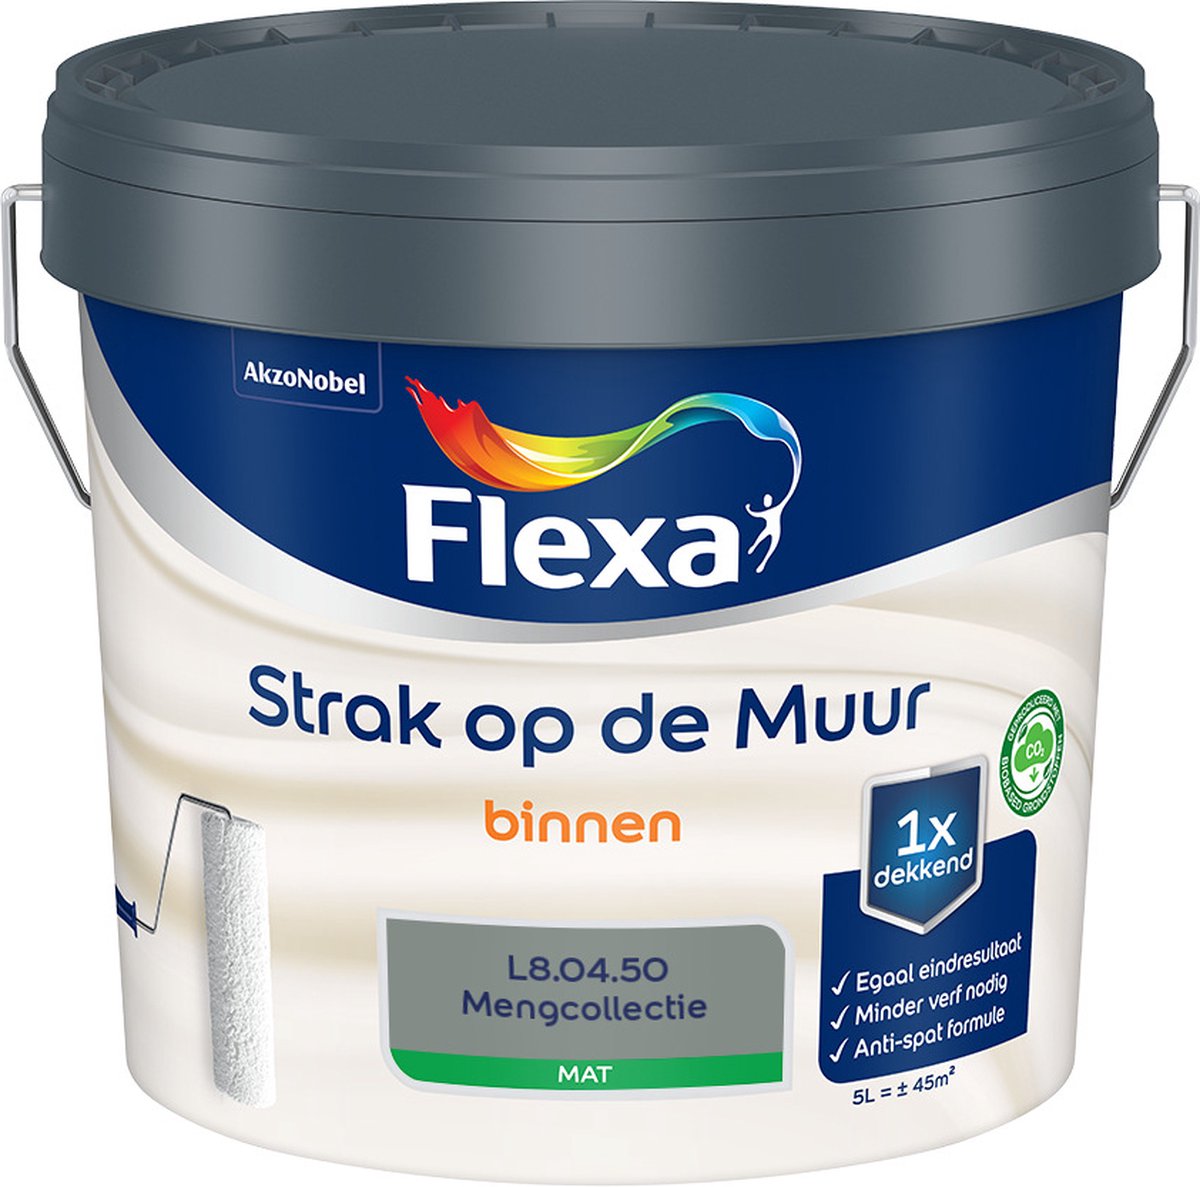 Flexa - Strak op de muur - Muurverf - Mengcollectie - L8.04.50 - 5 Liter